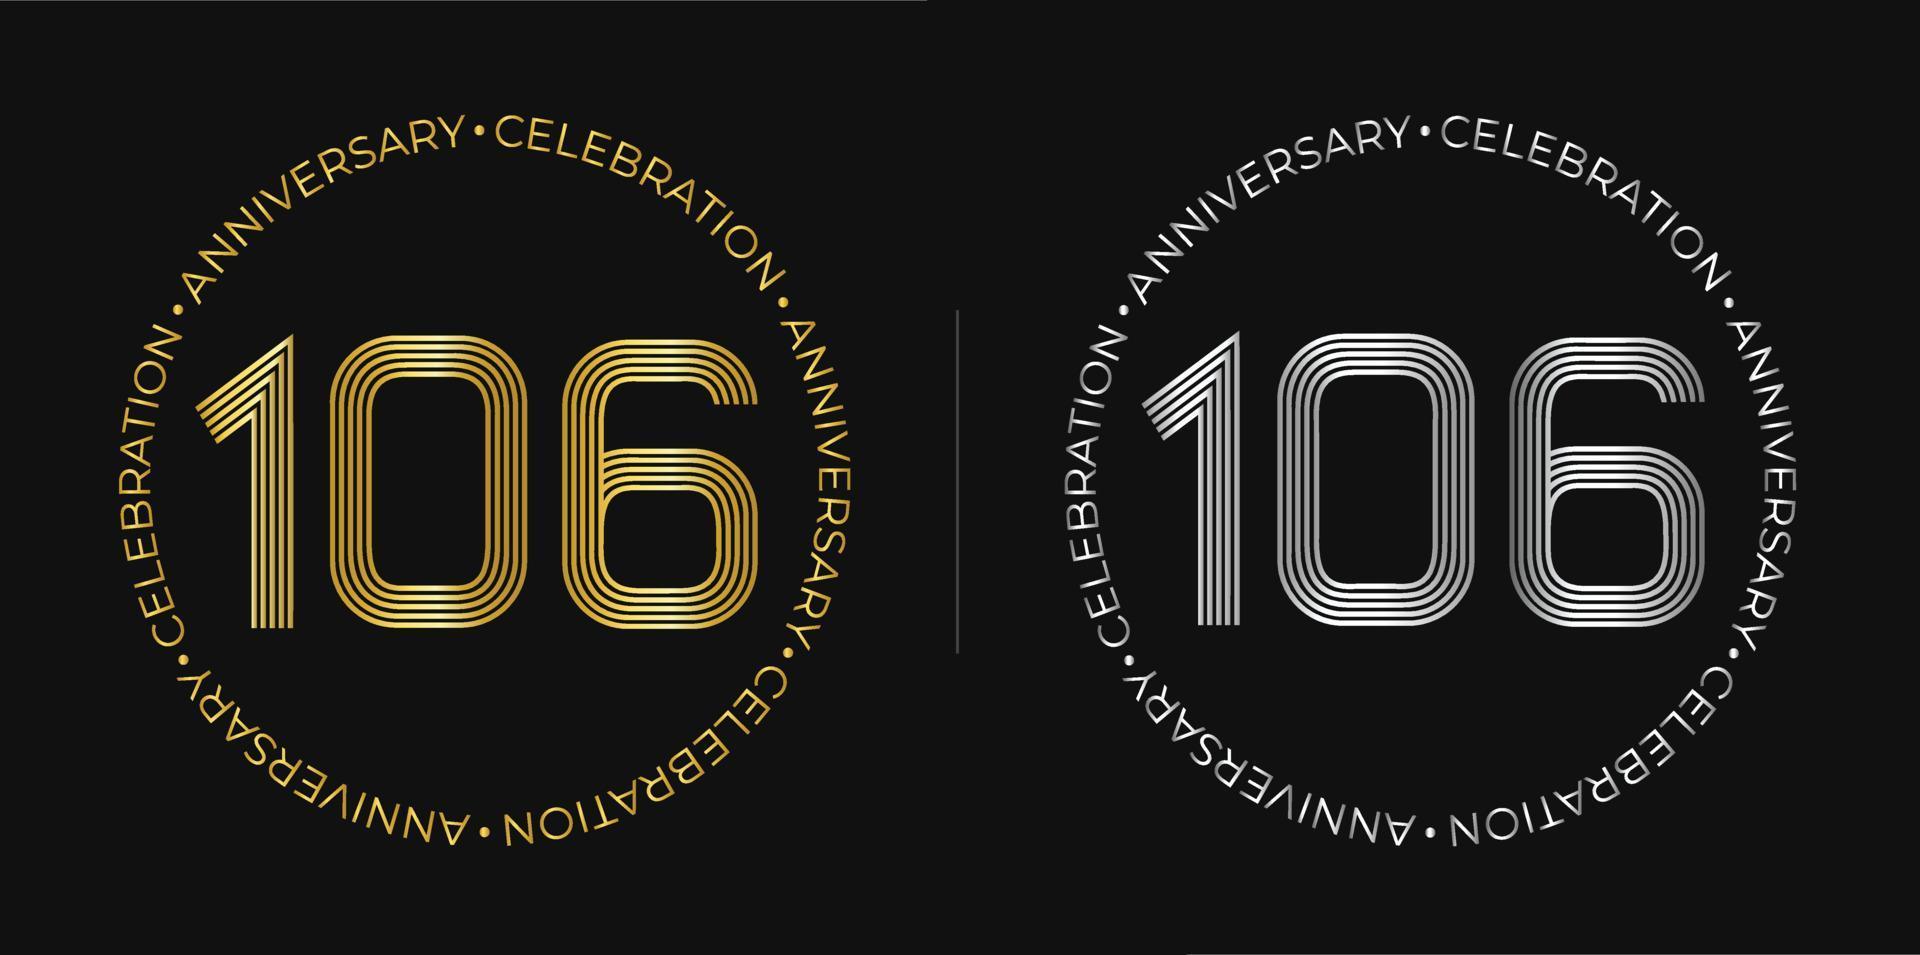 106e anniversaire. bannière de célébration d'anniversaire de cent six ans aux couleurs dorées et argentées. logo circulaire avec un design original de chiffres aux lignes élégantes. vecteur